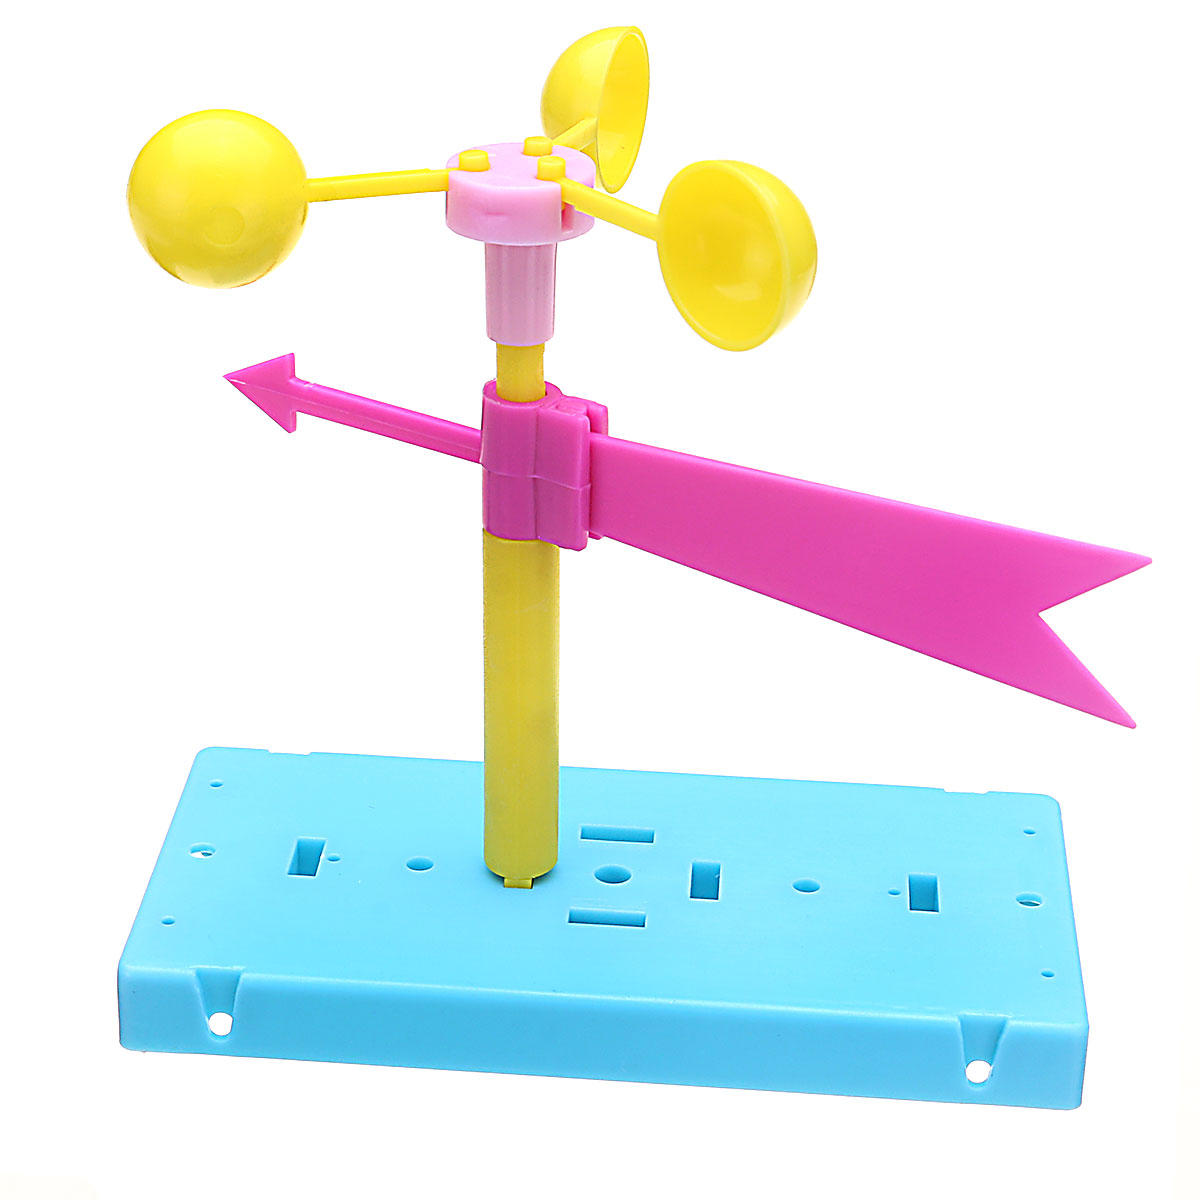 

Флюгер Направление ветра Физический эксперимент DIY Развивающие игрушки для науки Набор